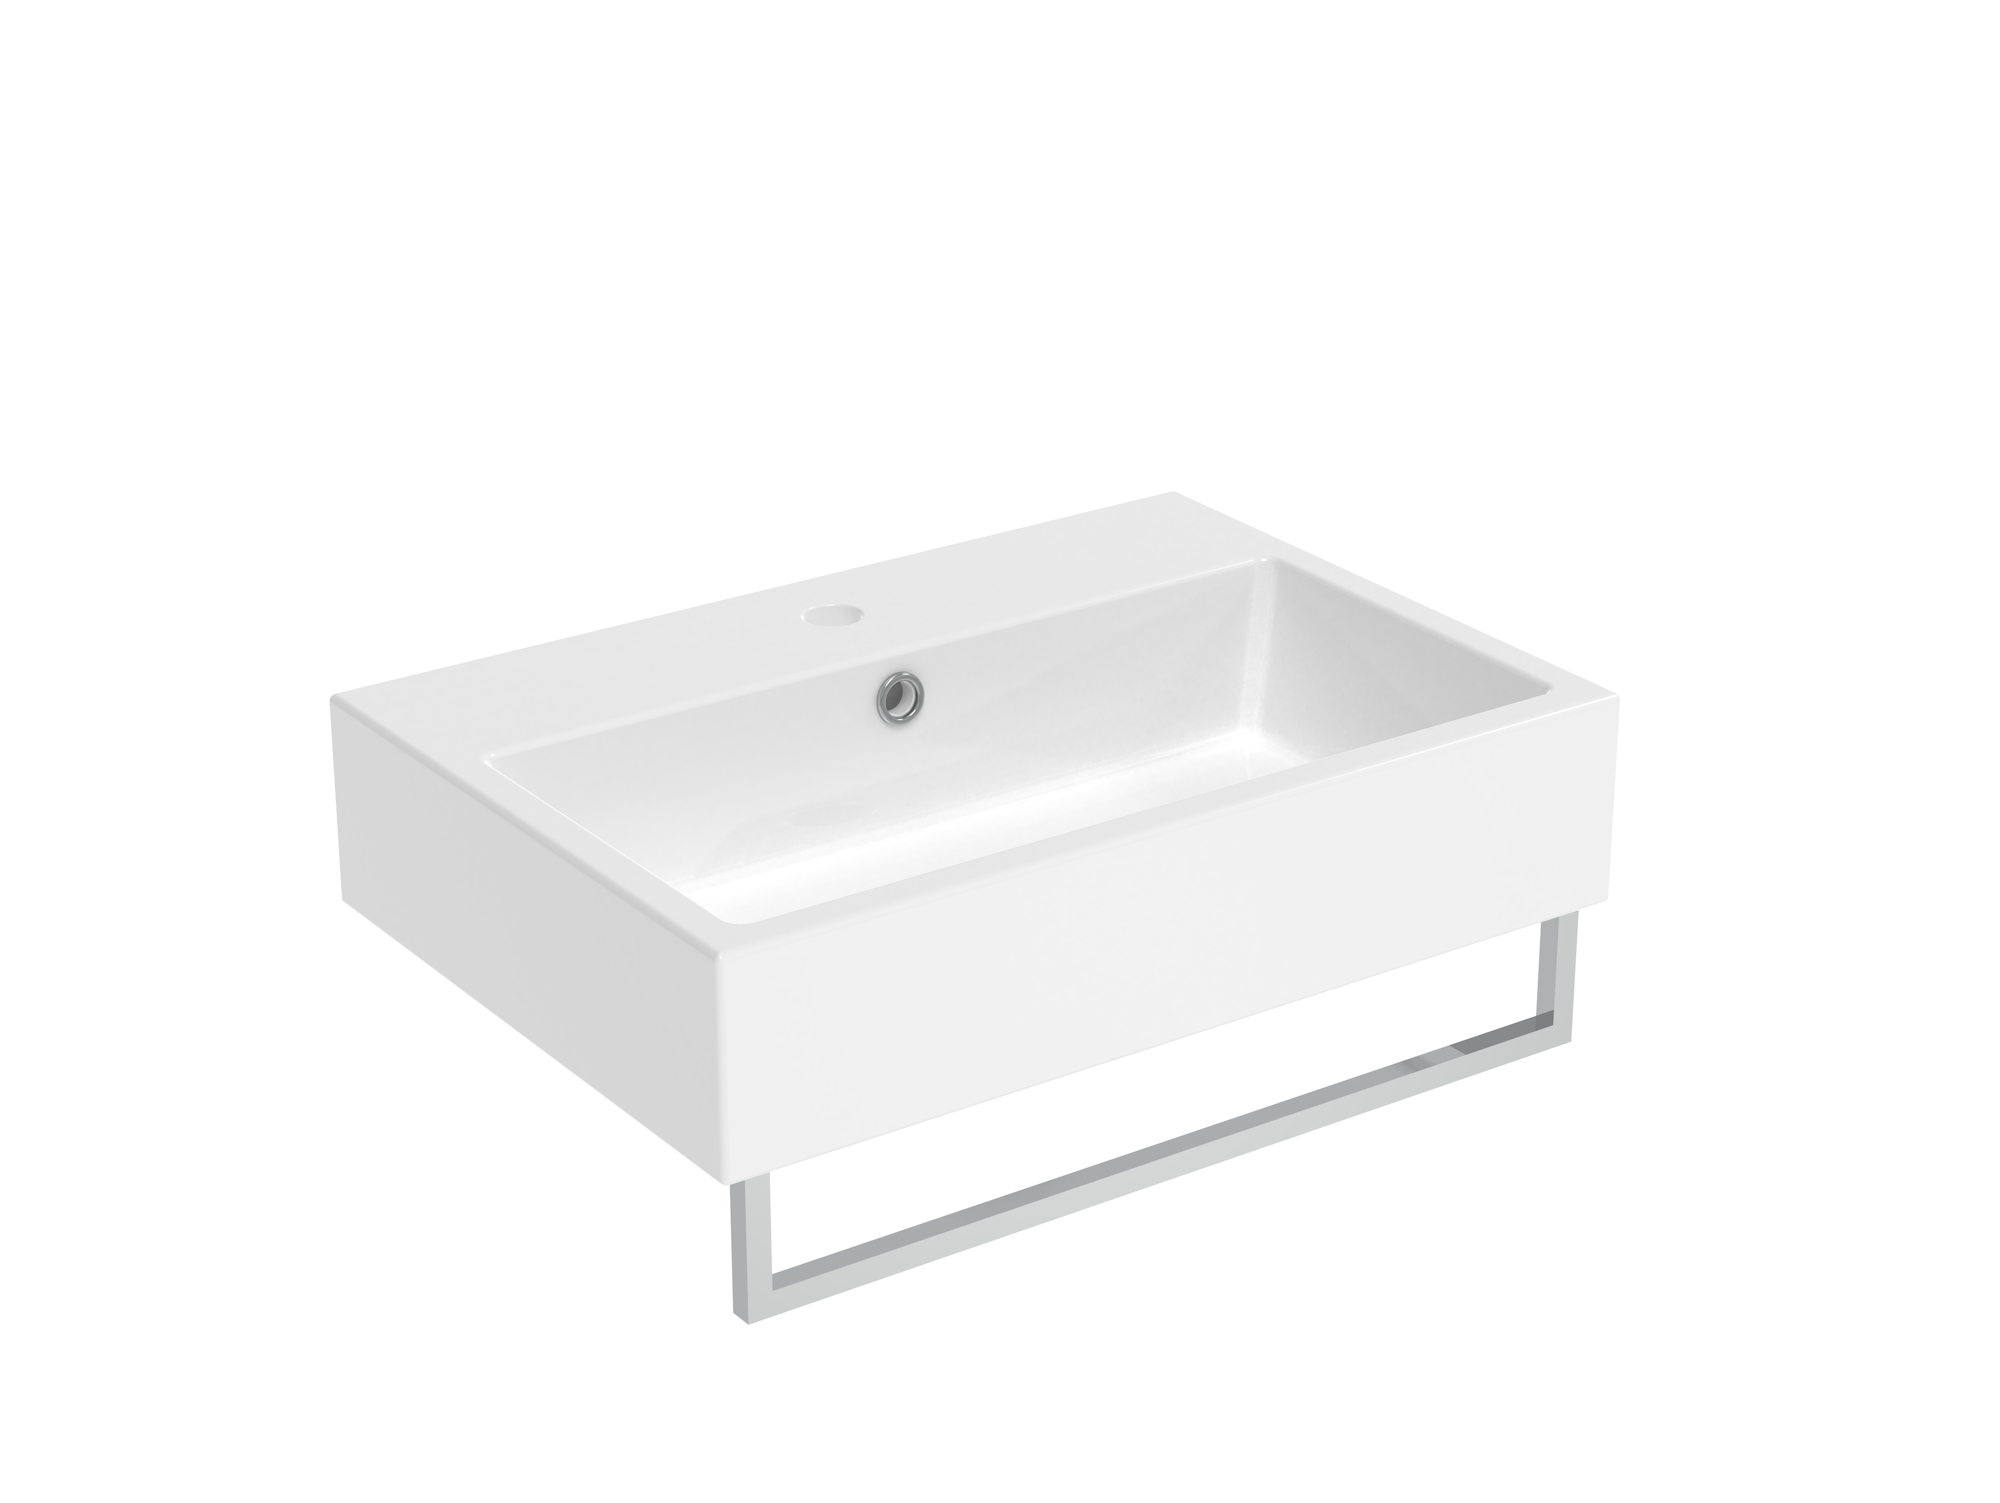 MATTEO 60x42cm washbasin 1TH - Gloss White